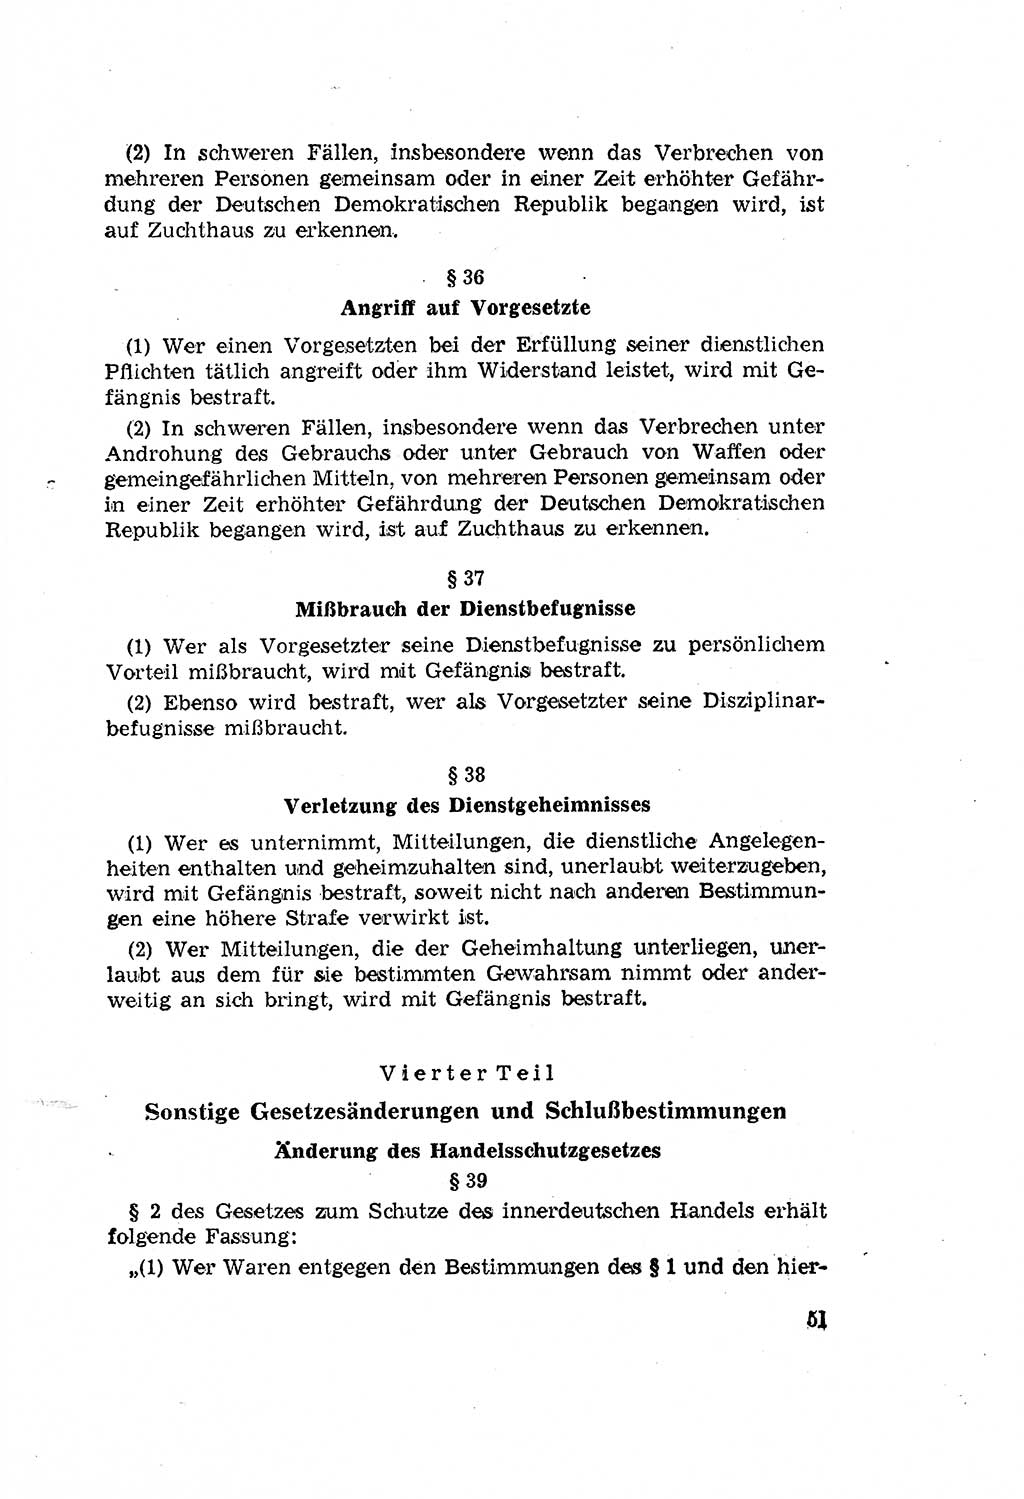 Zum Erlaß des Gesetzes zur Ergänzung des Strafgesetzbuches (StGB), Strafergänzungsgesetz (StEG) [Deutsche Demokratische Republik (DDR)] 1957, Seite 51 (StGB StEG DDR 1957, S. 51)